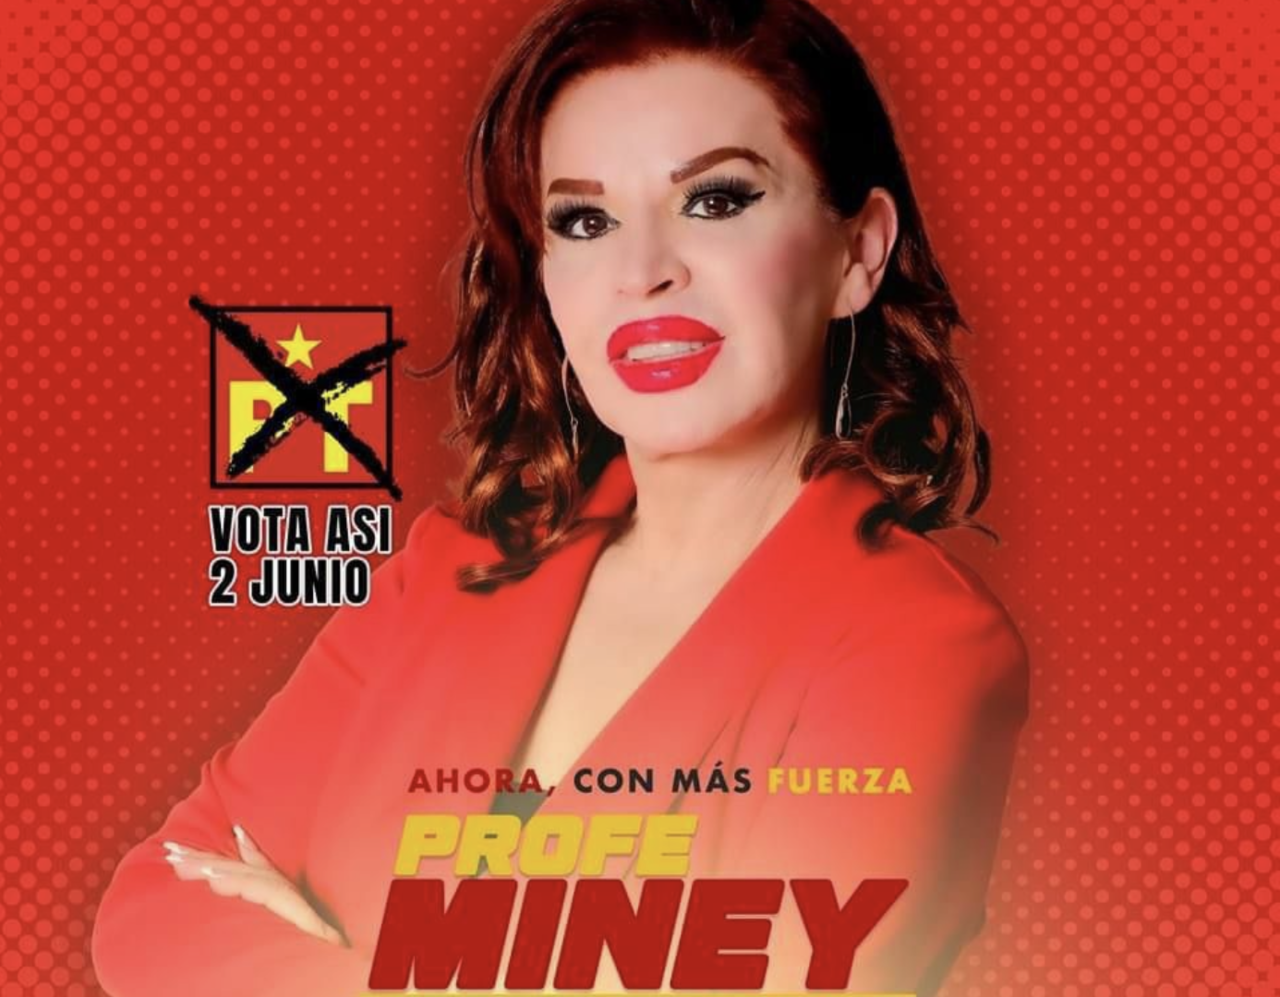 Adriana Garza, conocida como Minei., candidata del PT a la alcaldía de Hidalgo. Foto: Especial